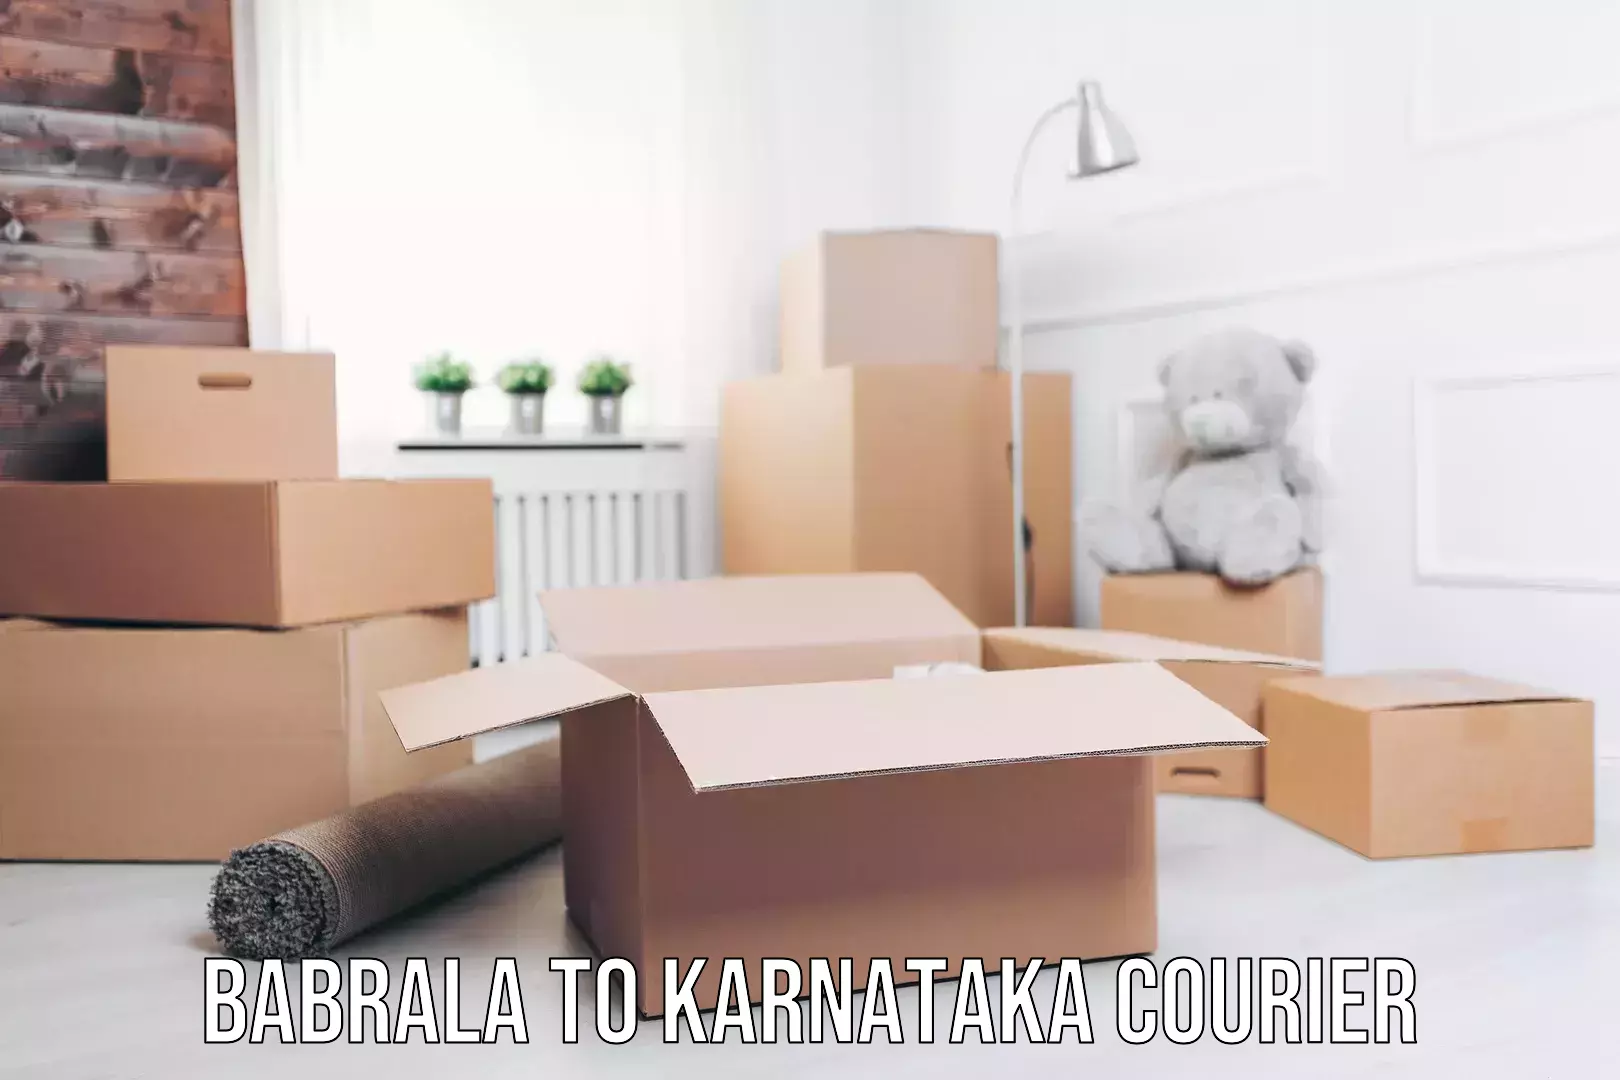 Efficient package consolidation Babrala to Karnataka